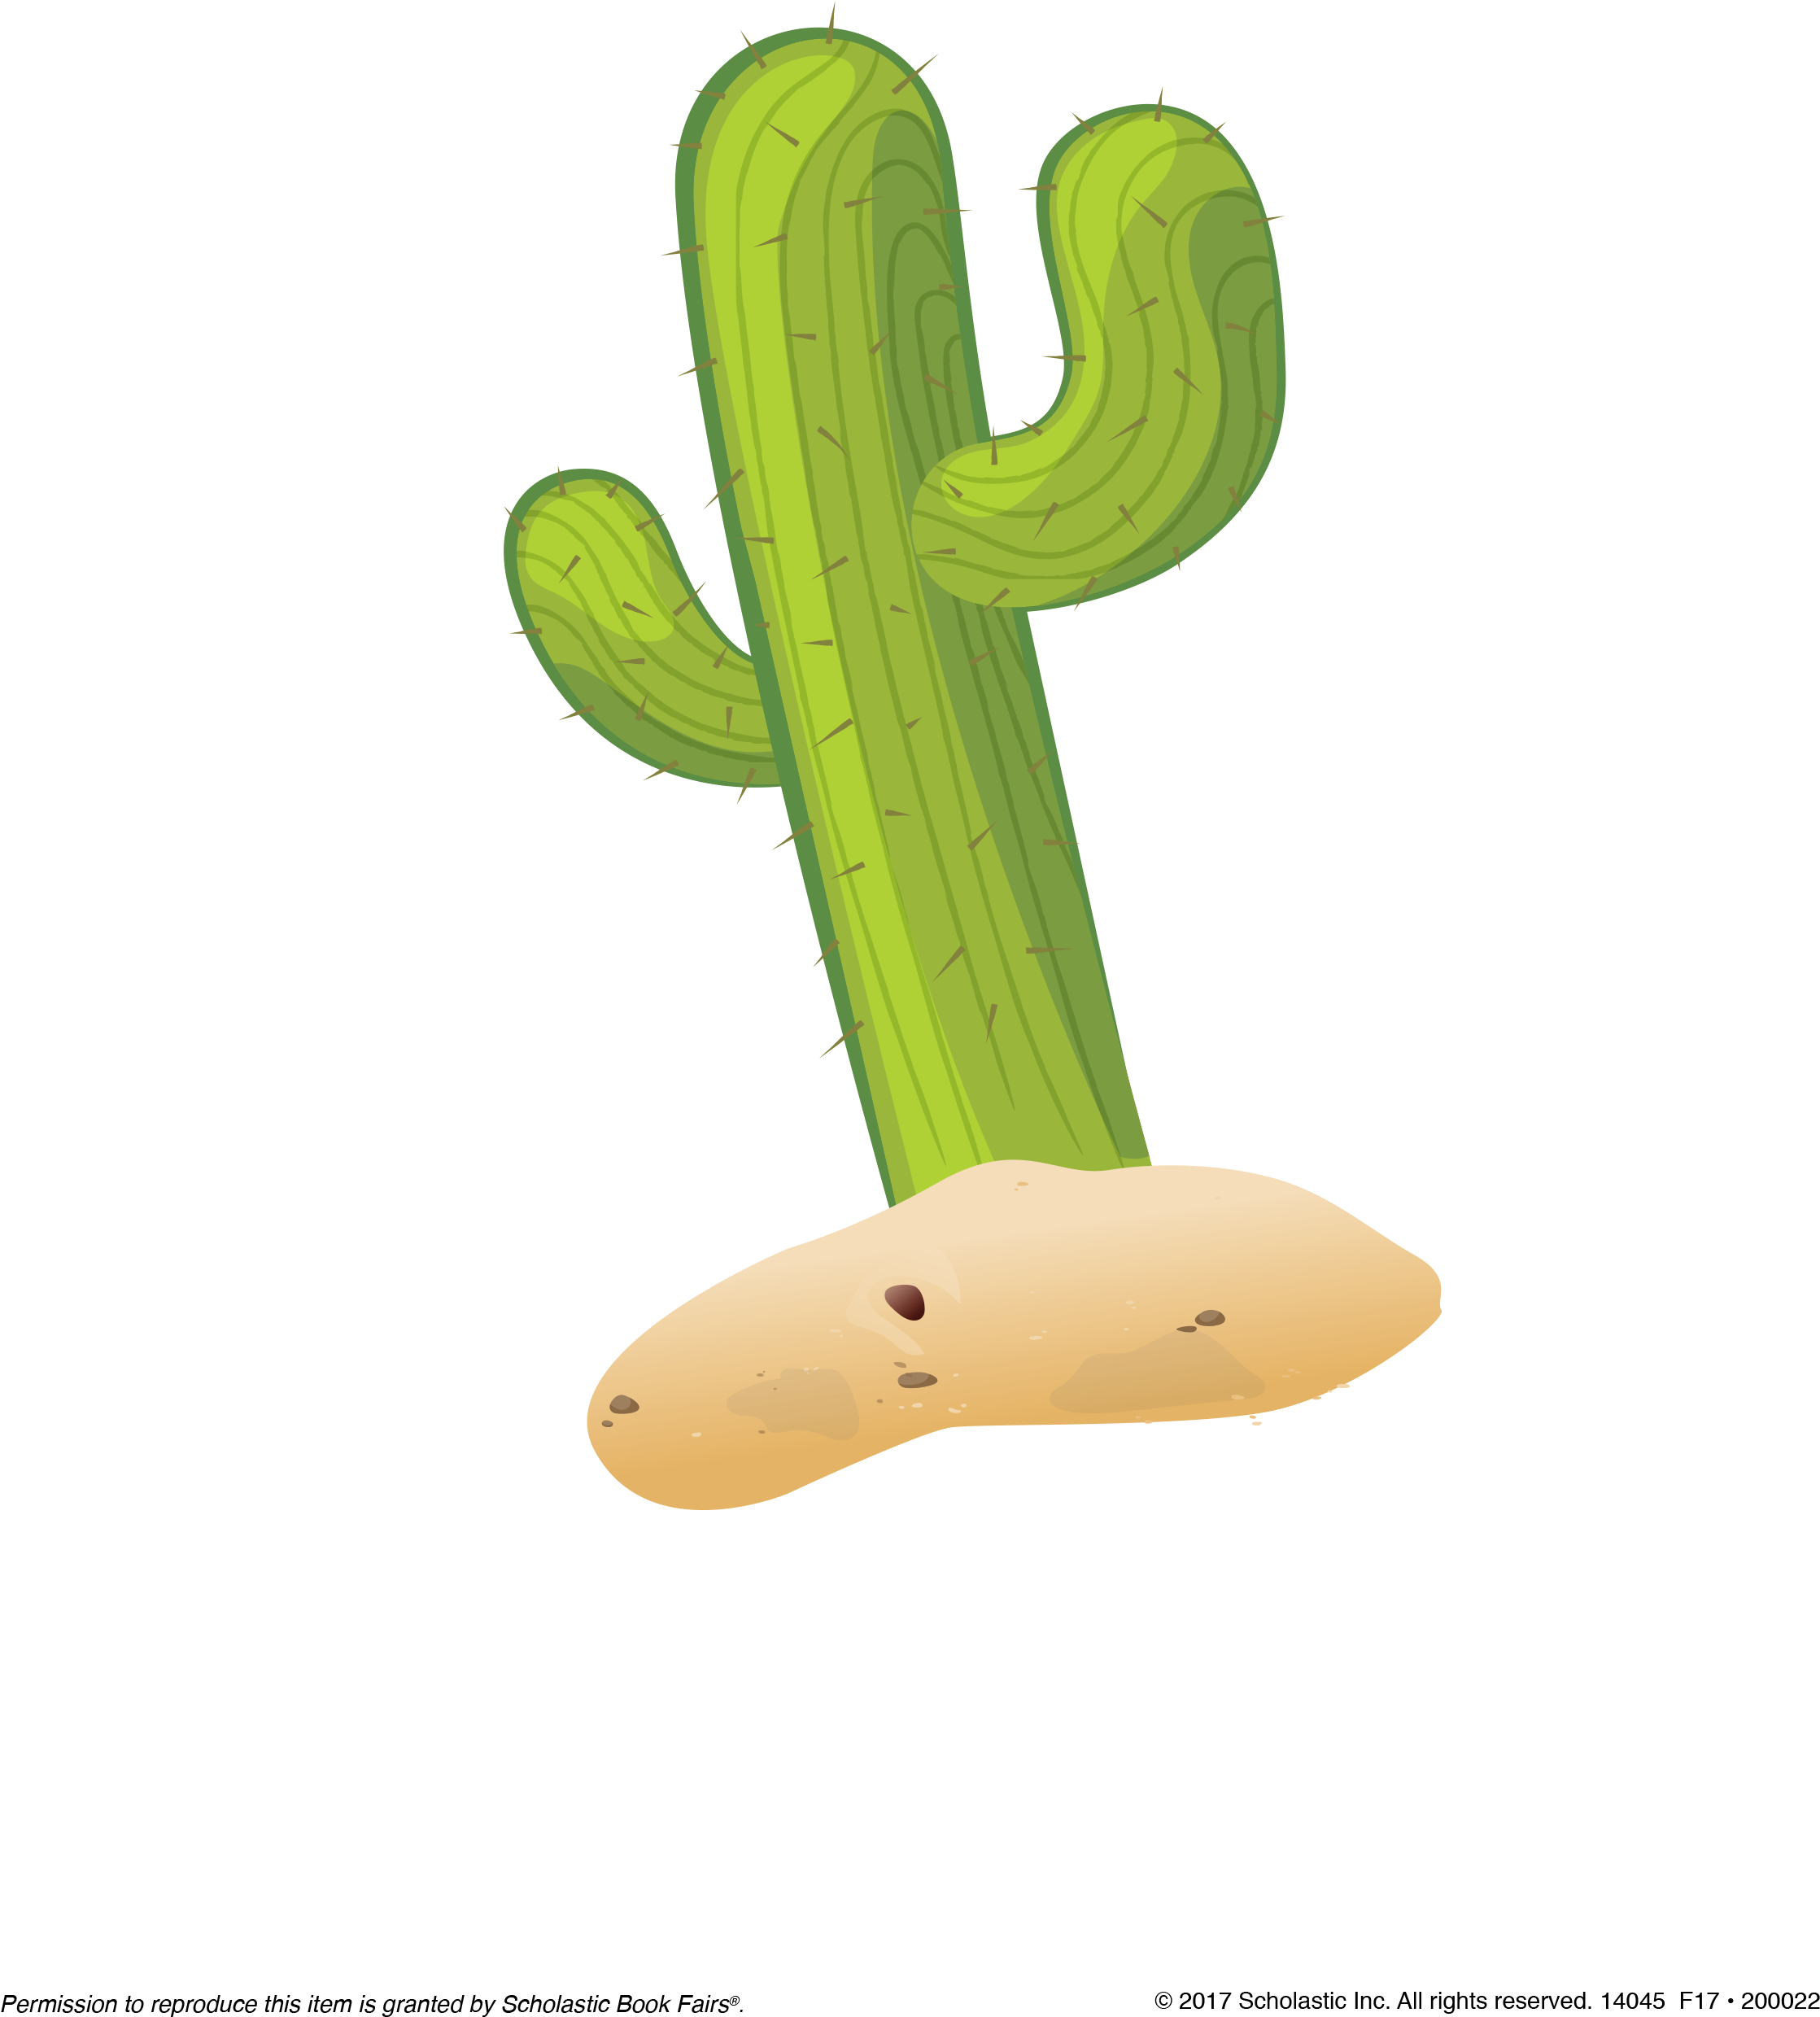 Cactus Image - San Pedro Cactus (2550x3300)